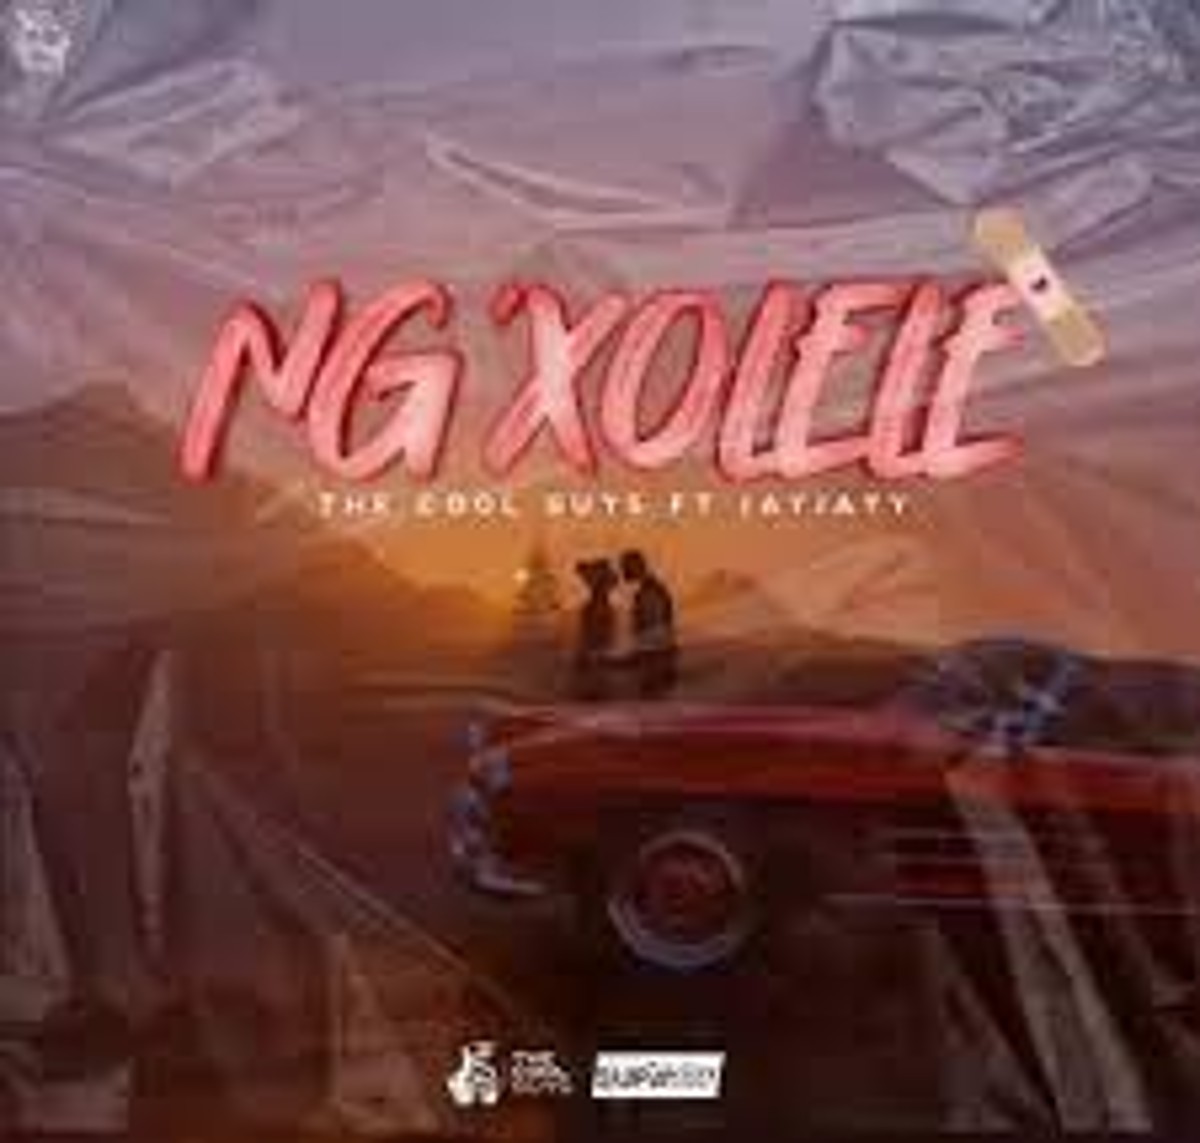 The Cool Guys – Ng’xolele Ft. Jay Jayy Mp3 Download Fakaza: T